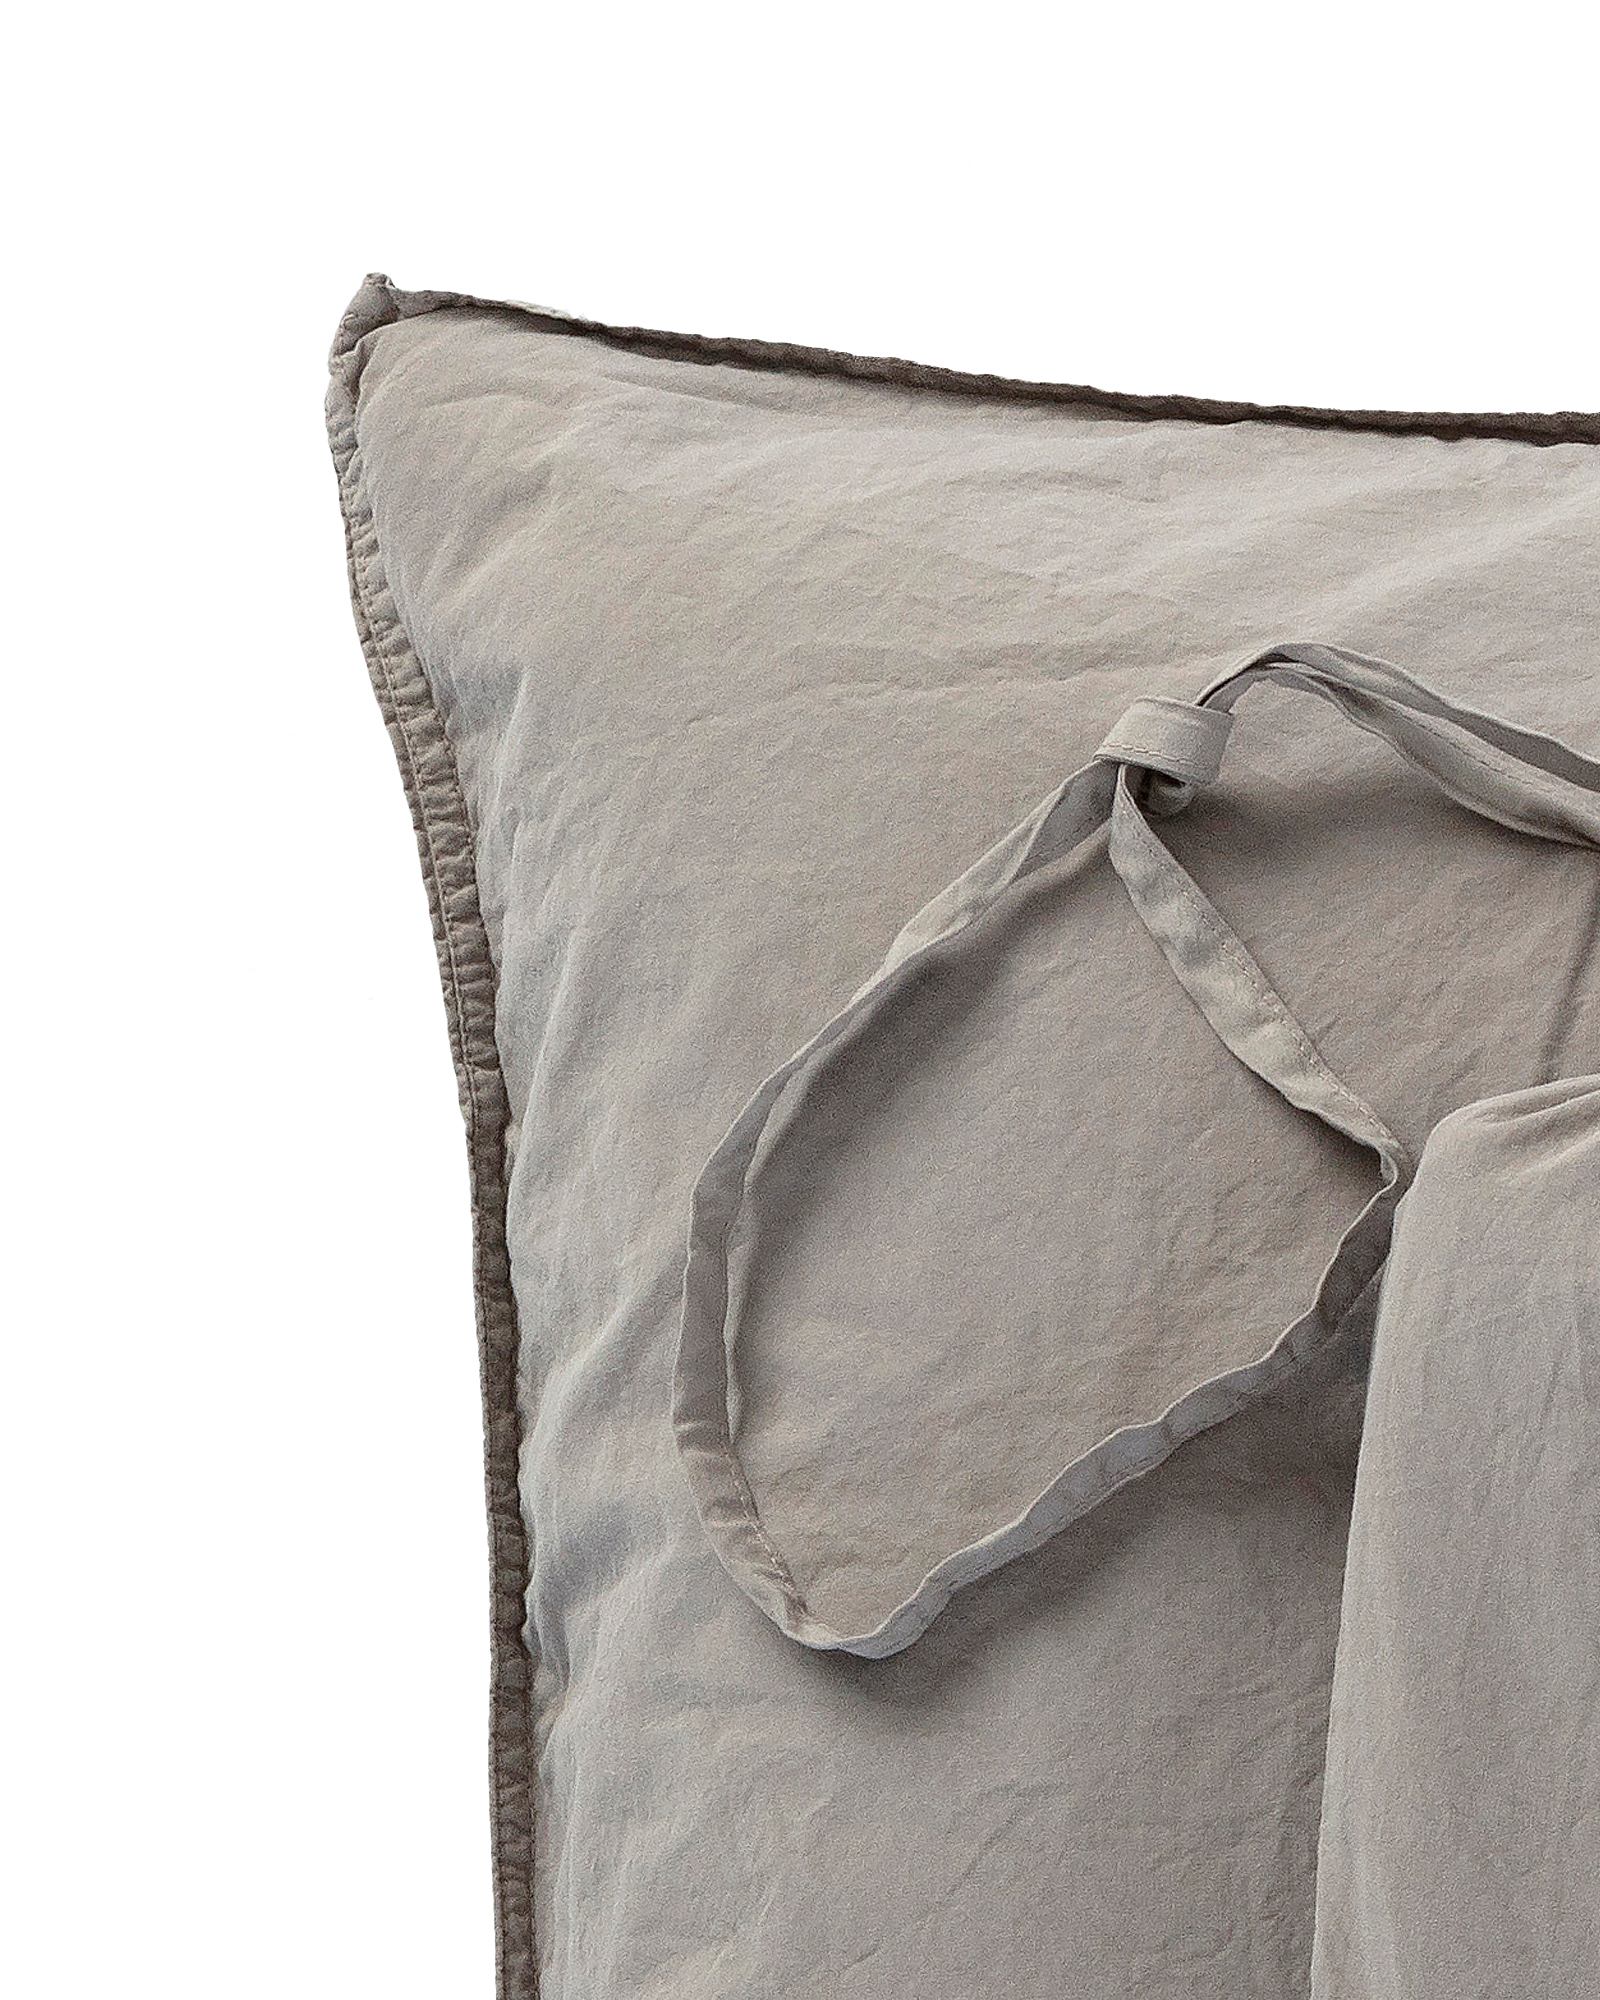 MARIE-MARIE - Pillowcase VINTAGE COTTON Iron - 50x75 cm - Iron